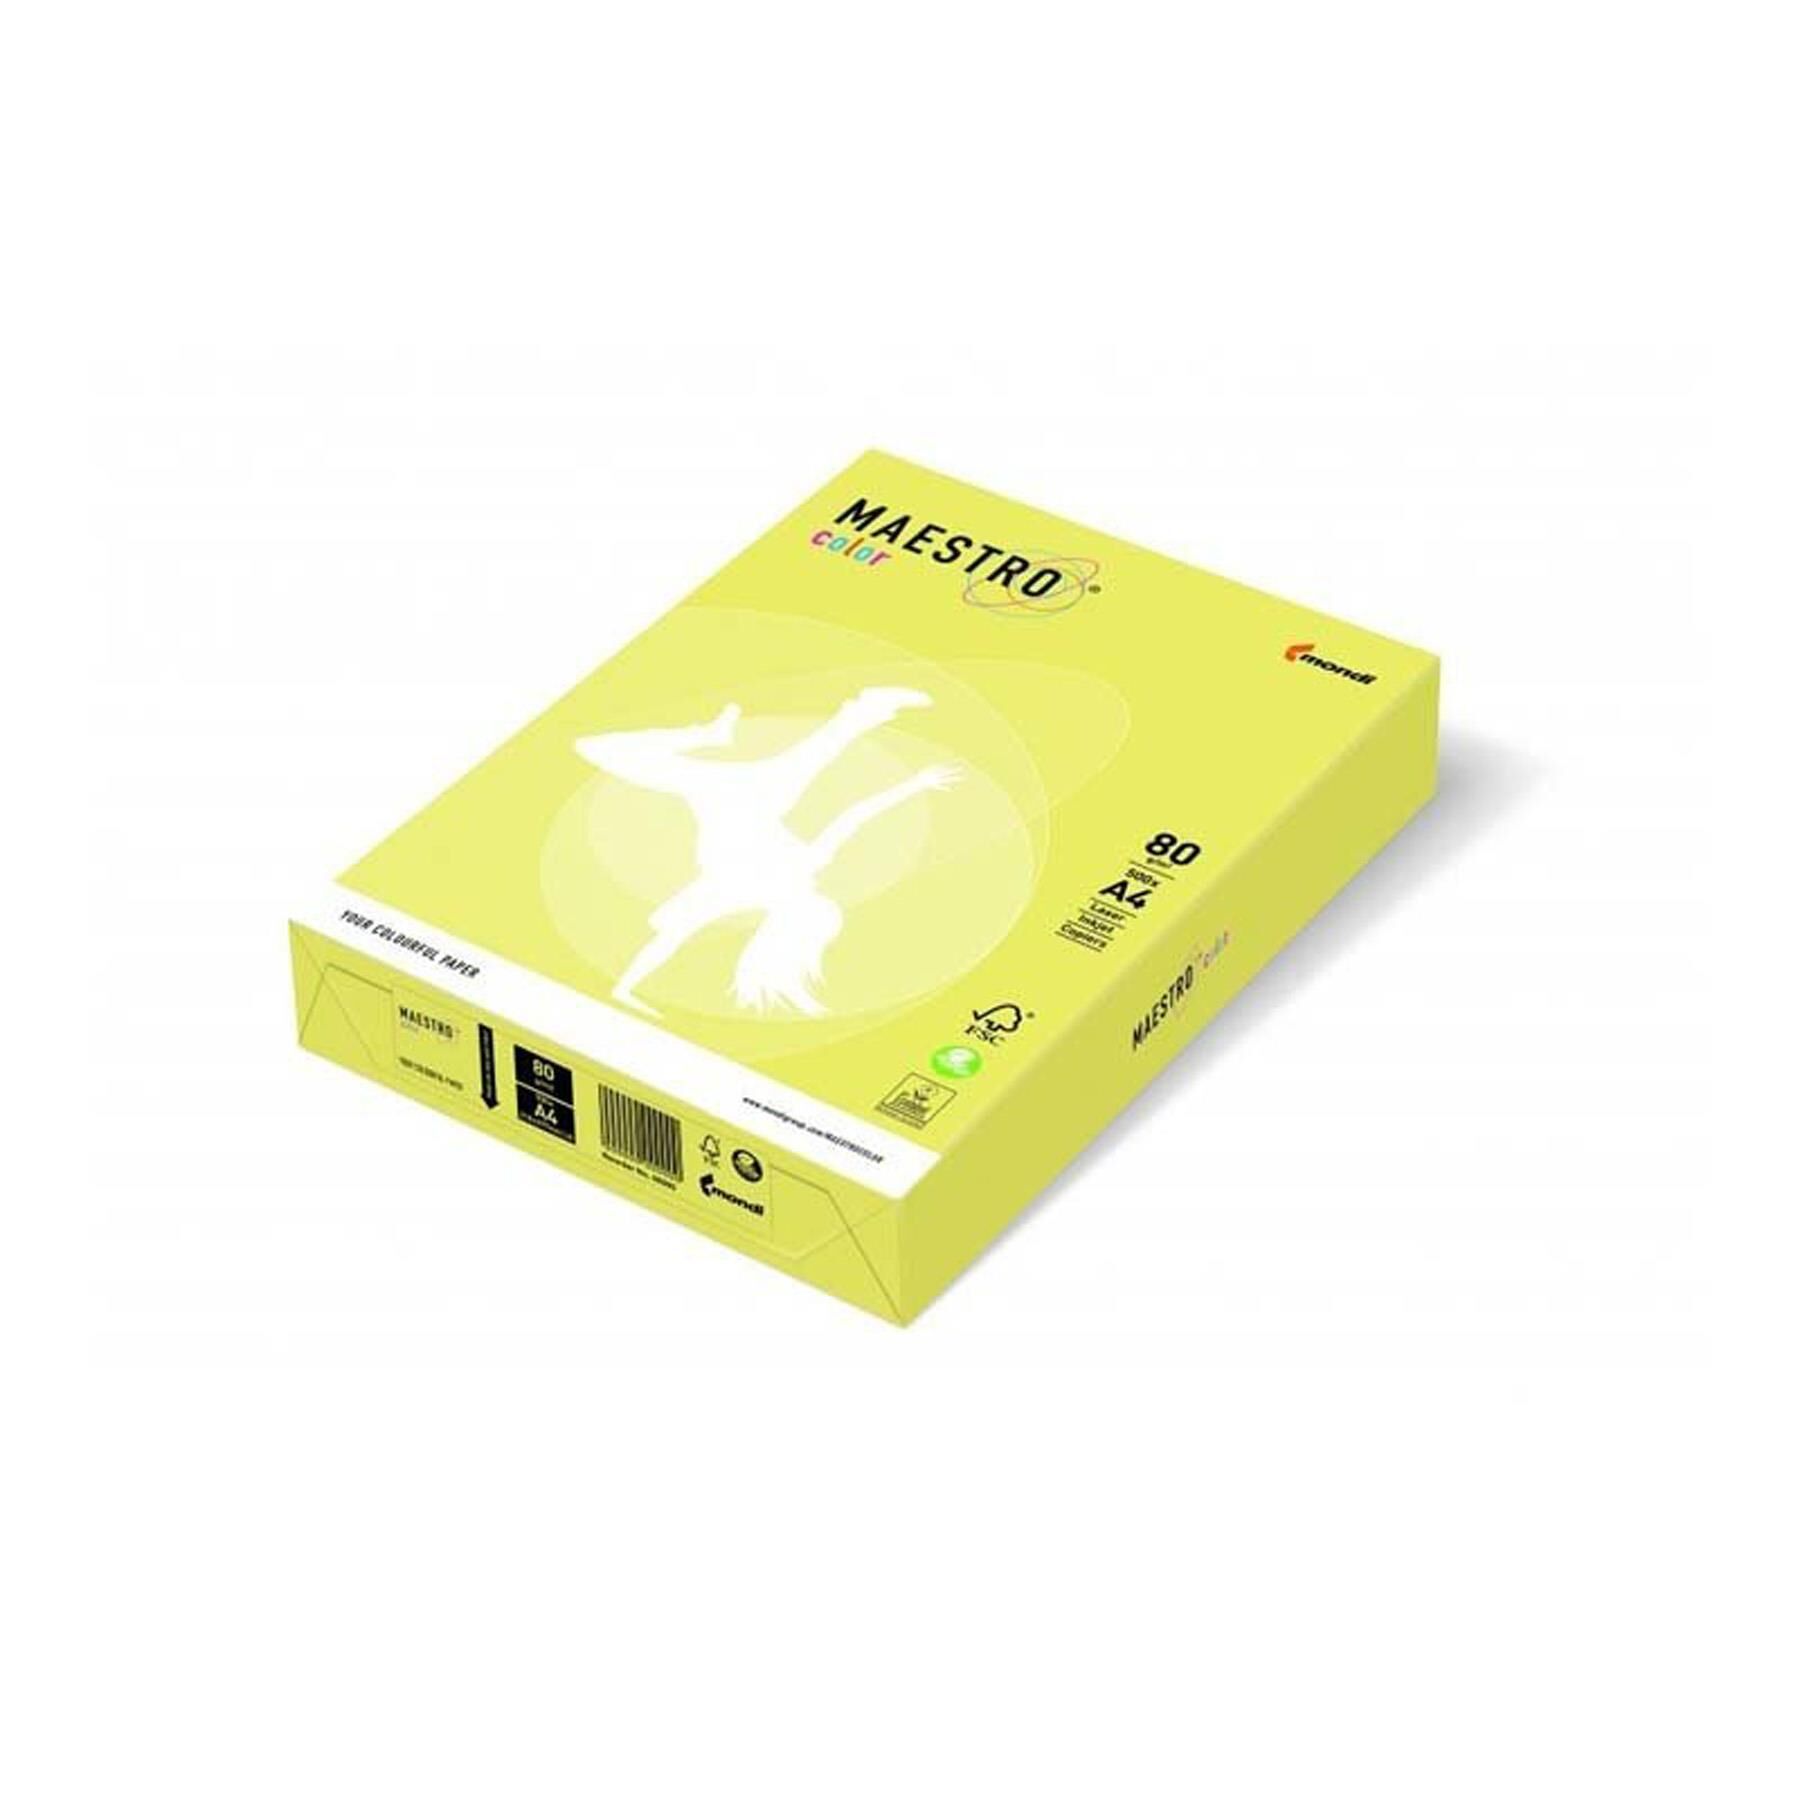 Mondi A4 Renkli Fotokopi Kağıdı Sarı 500lü Mnd-160 (1 paket)